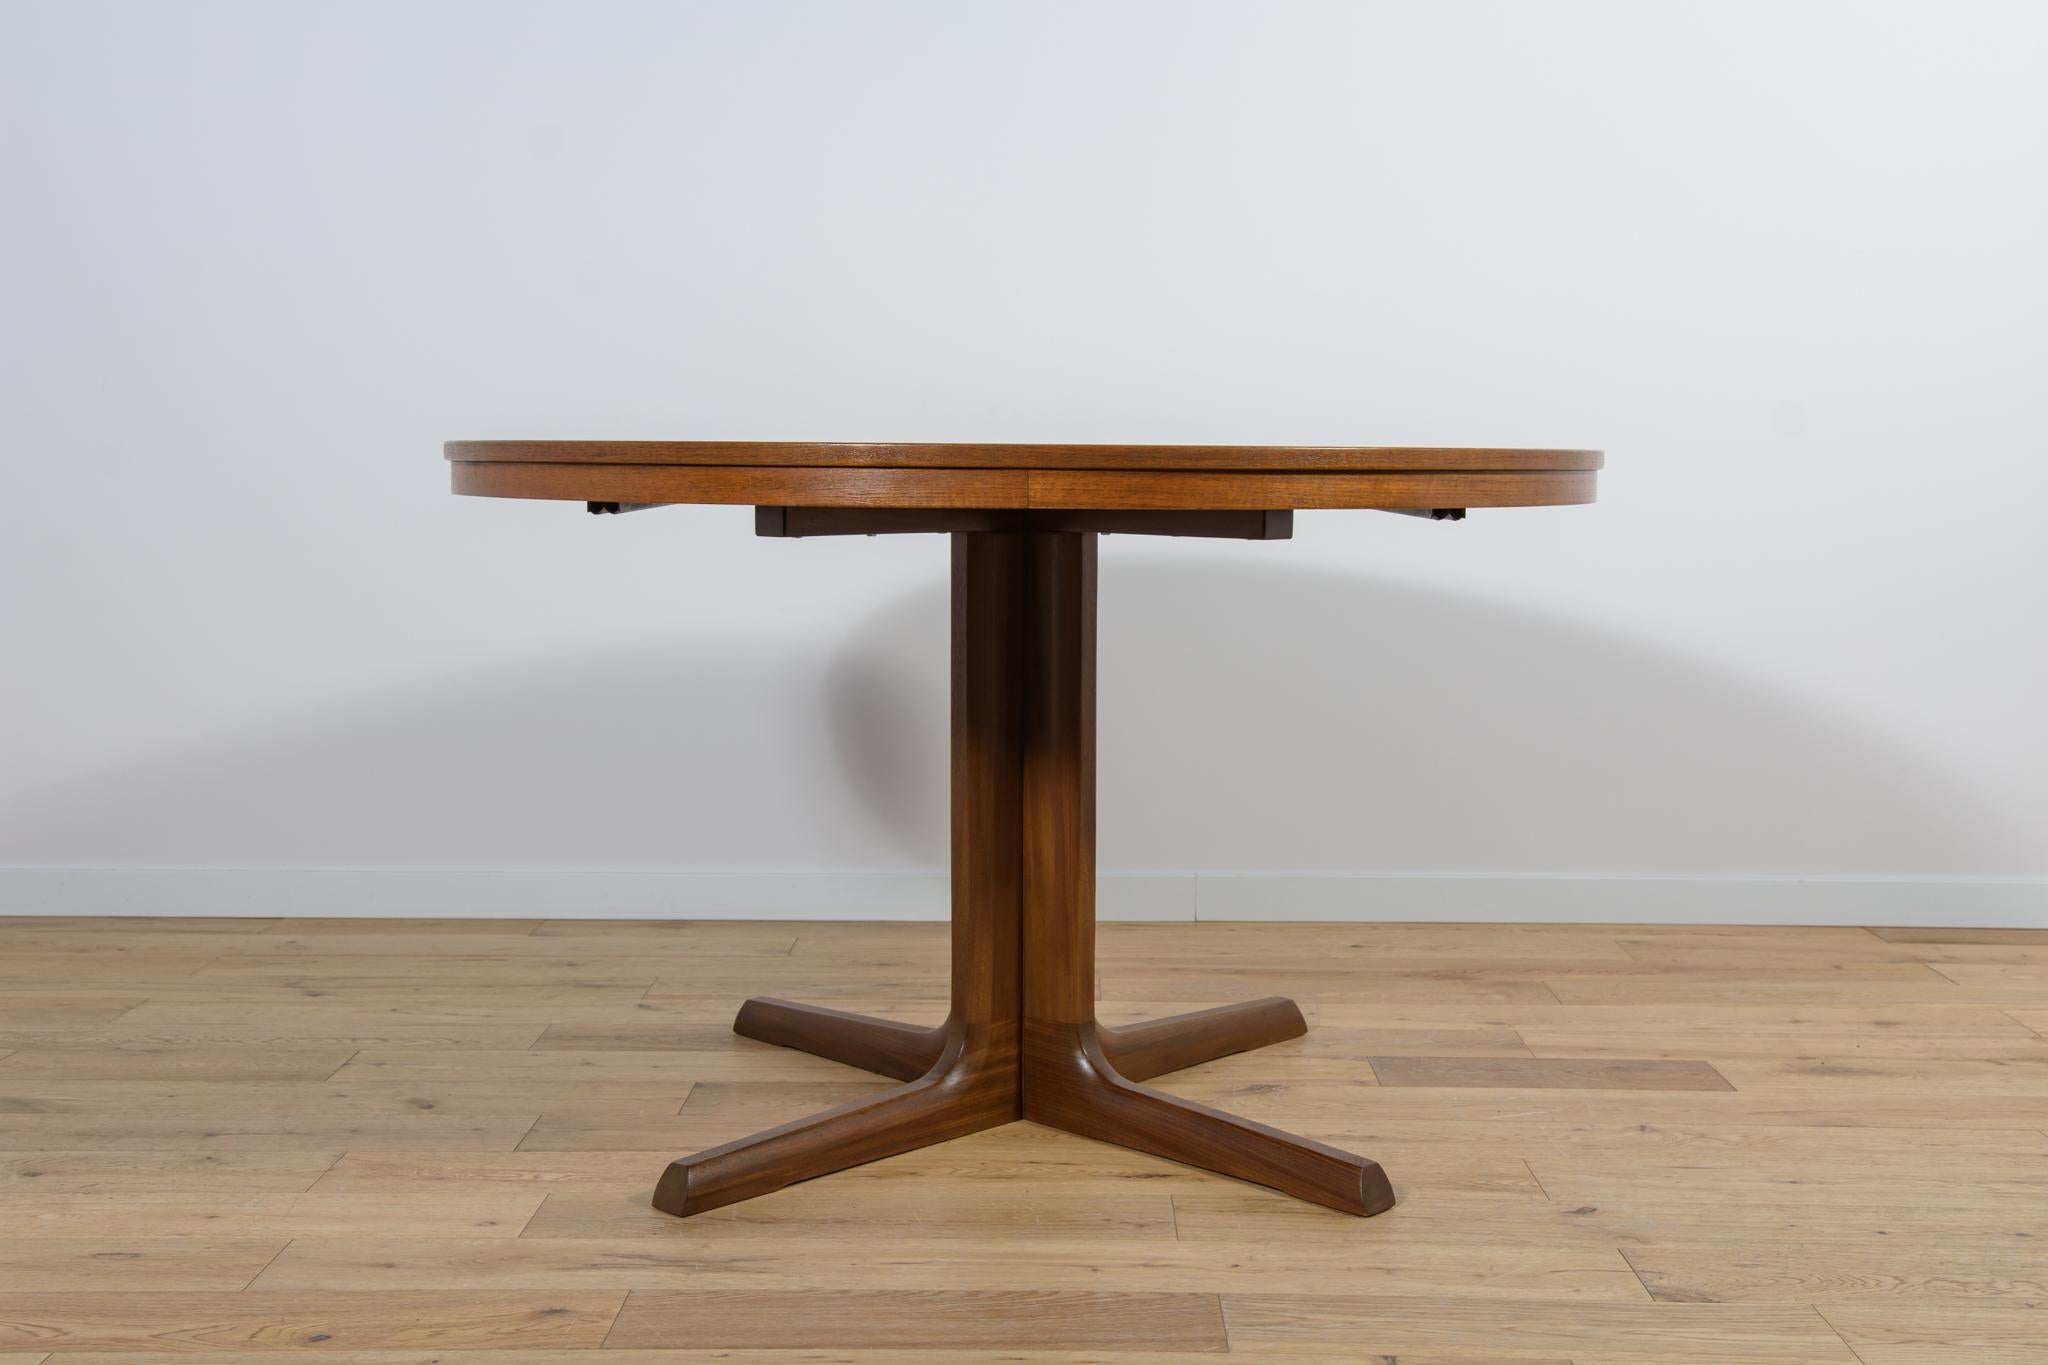 Table ronde à rallonge en bois de teck, fabriquée au Danemark dans les années 1960. La table après une rénovation complète de la menuiserie, nettoyée de l'ancienne surface, peinte en teinte chêne et finie avec une laque forte semi-mate. La table